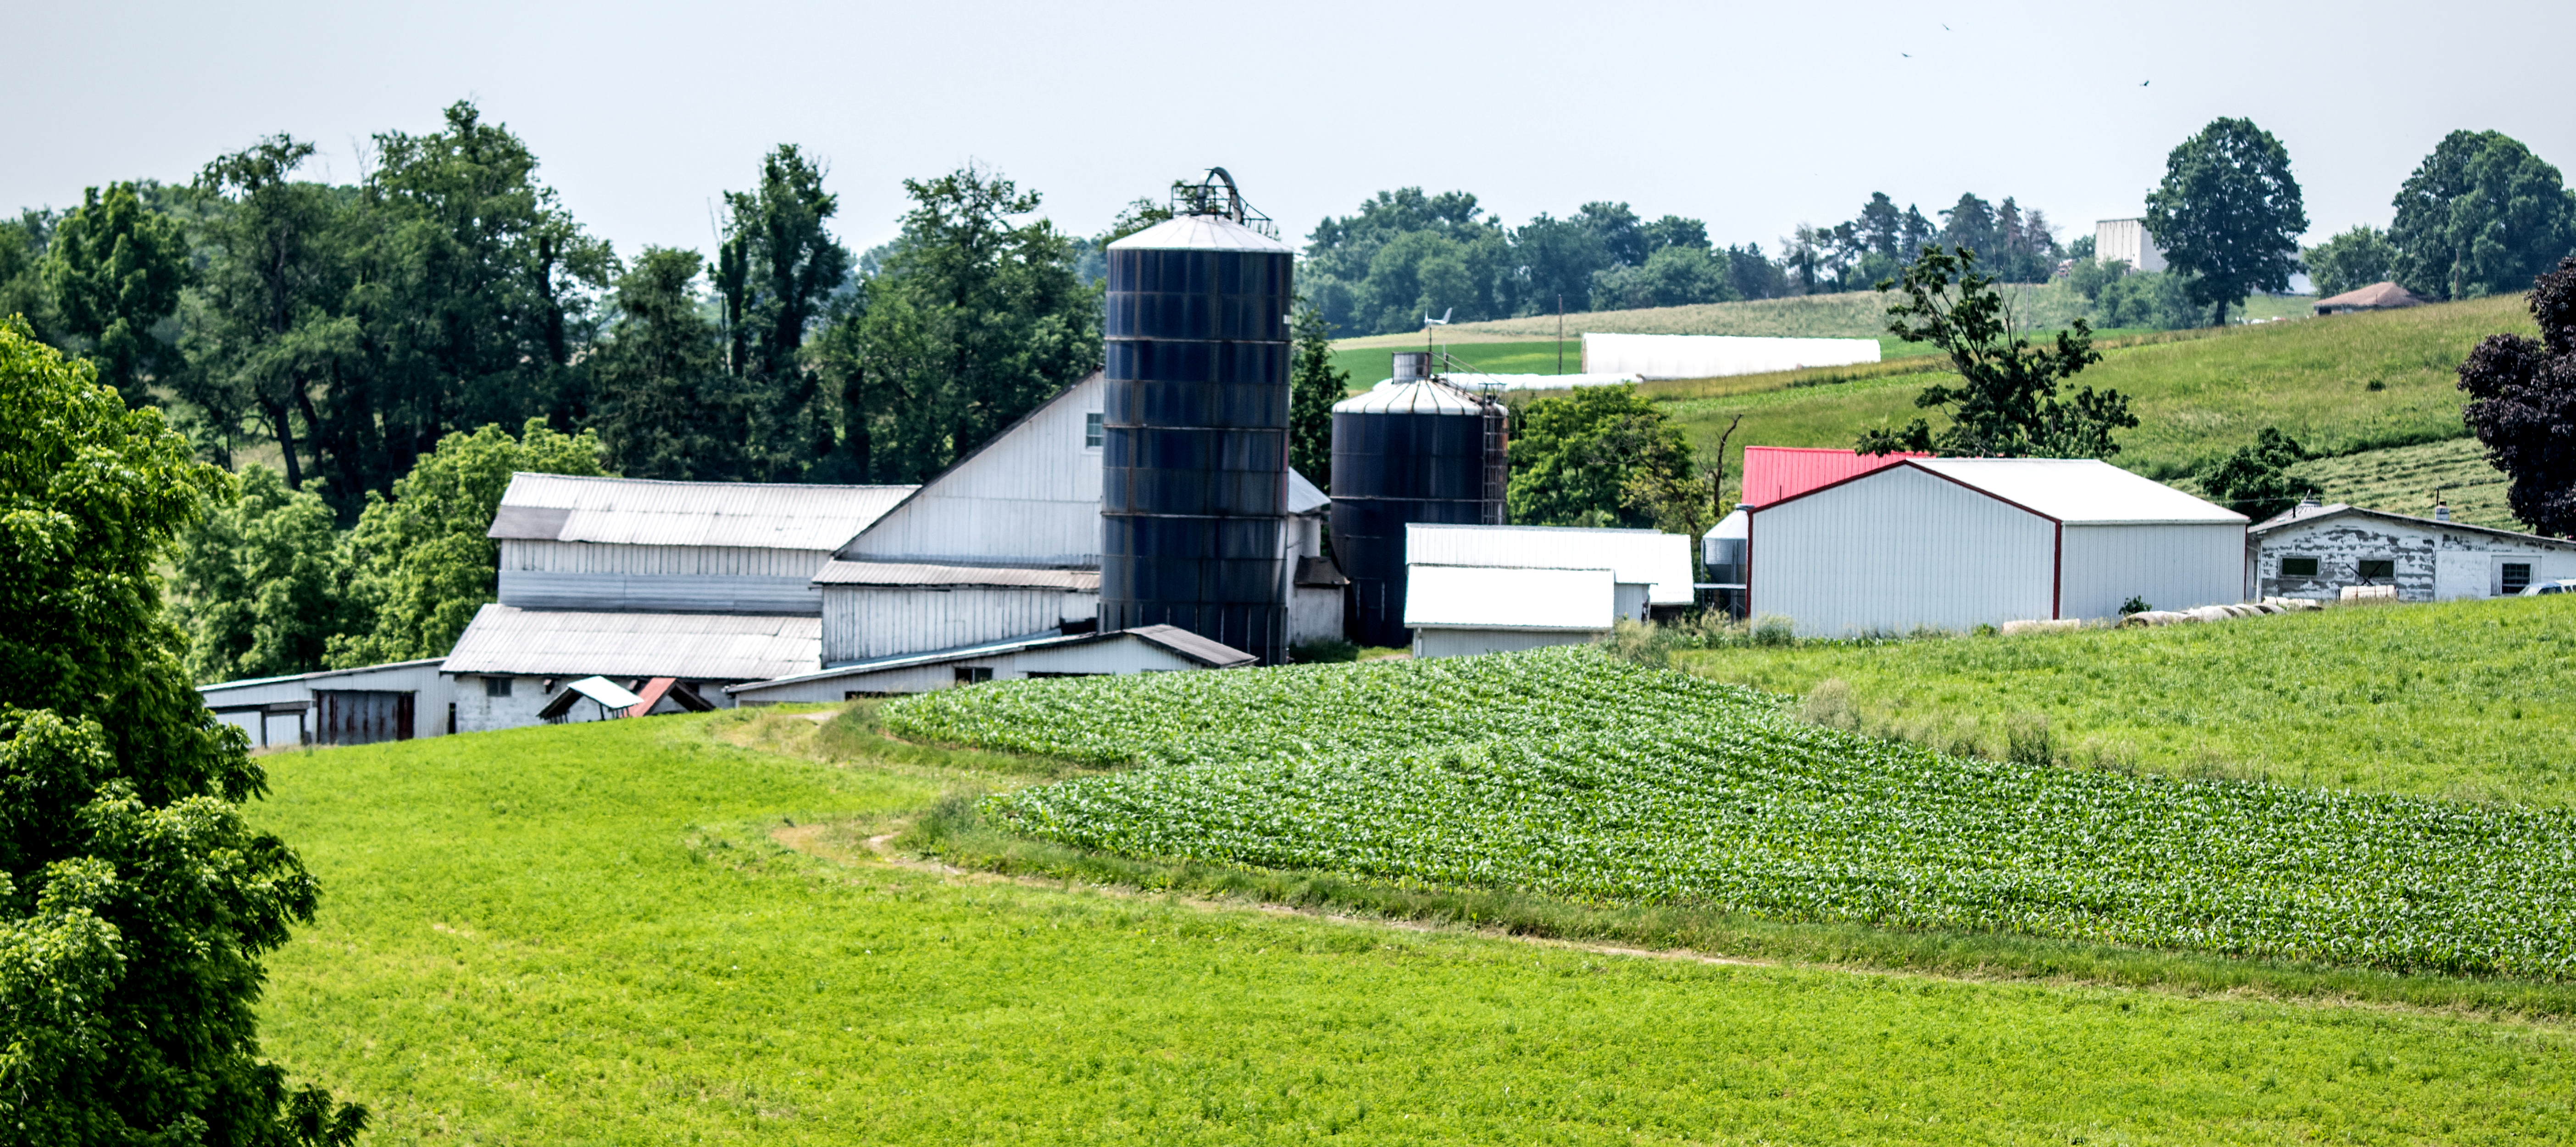 Image of a Kentucky farm